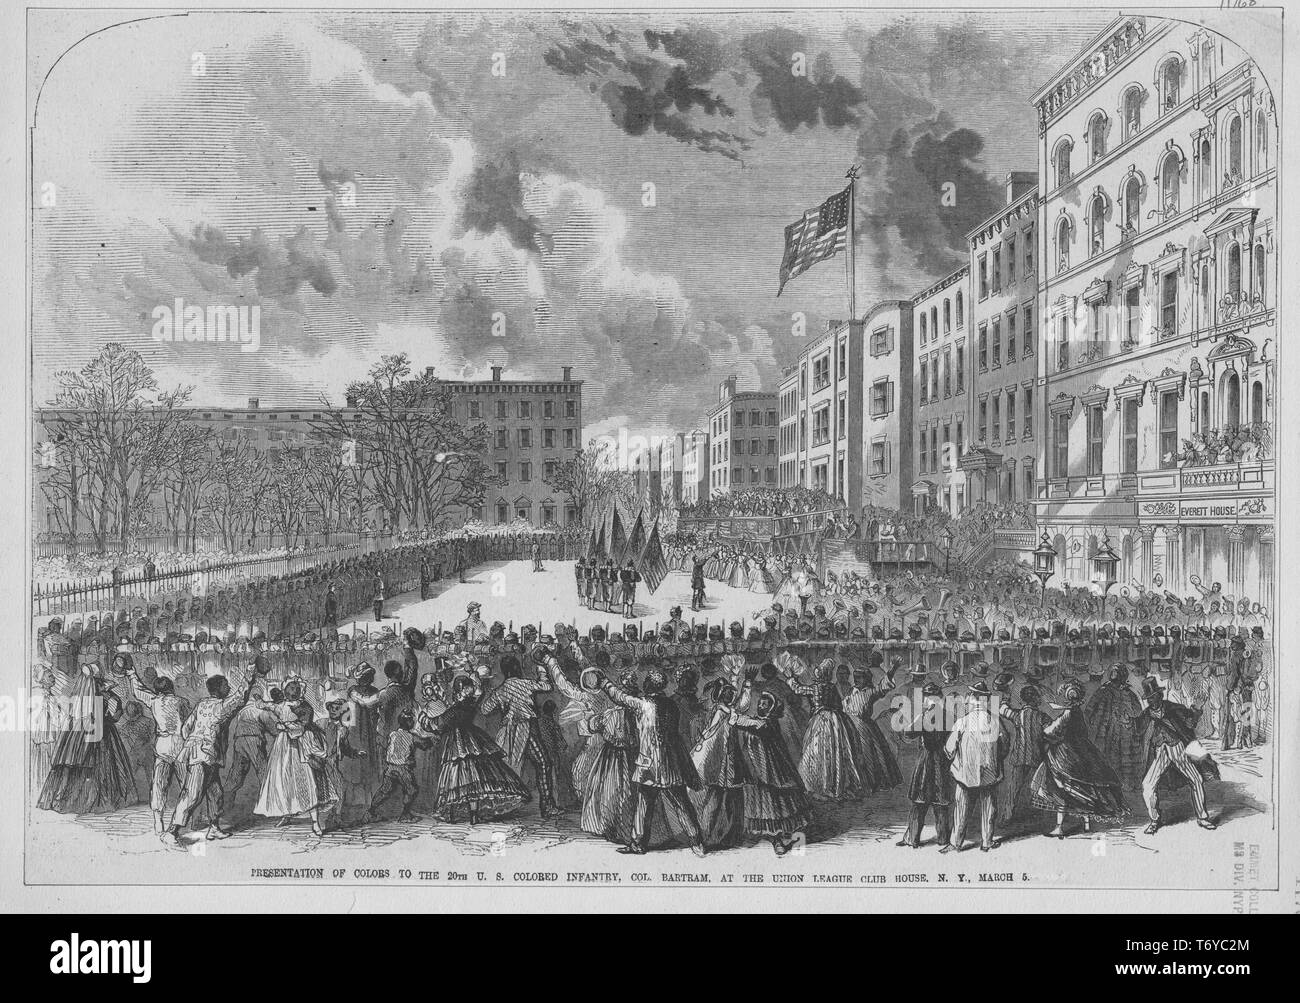 Gravure de présentation de la 20e Infanterie colorés nous à Union Square, New York, 1870. À partir de la Bibliothèque publique de New York. () Banque D'Images